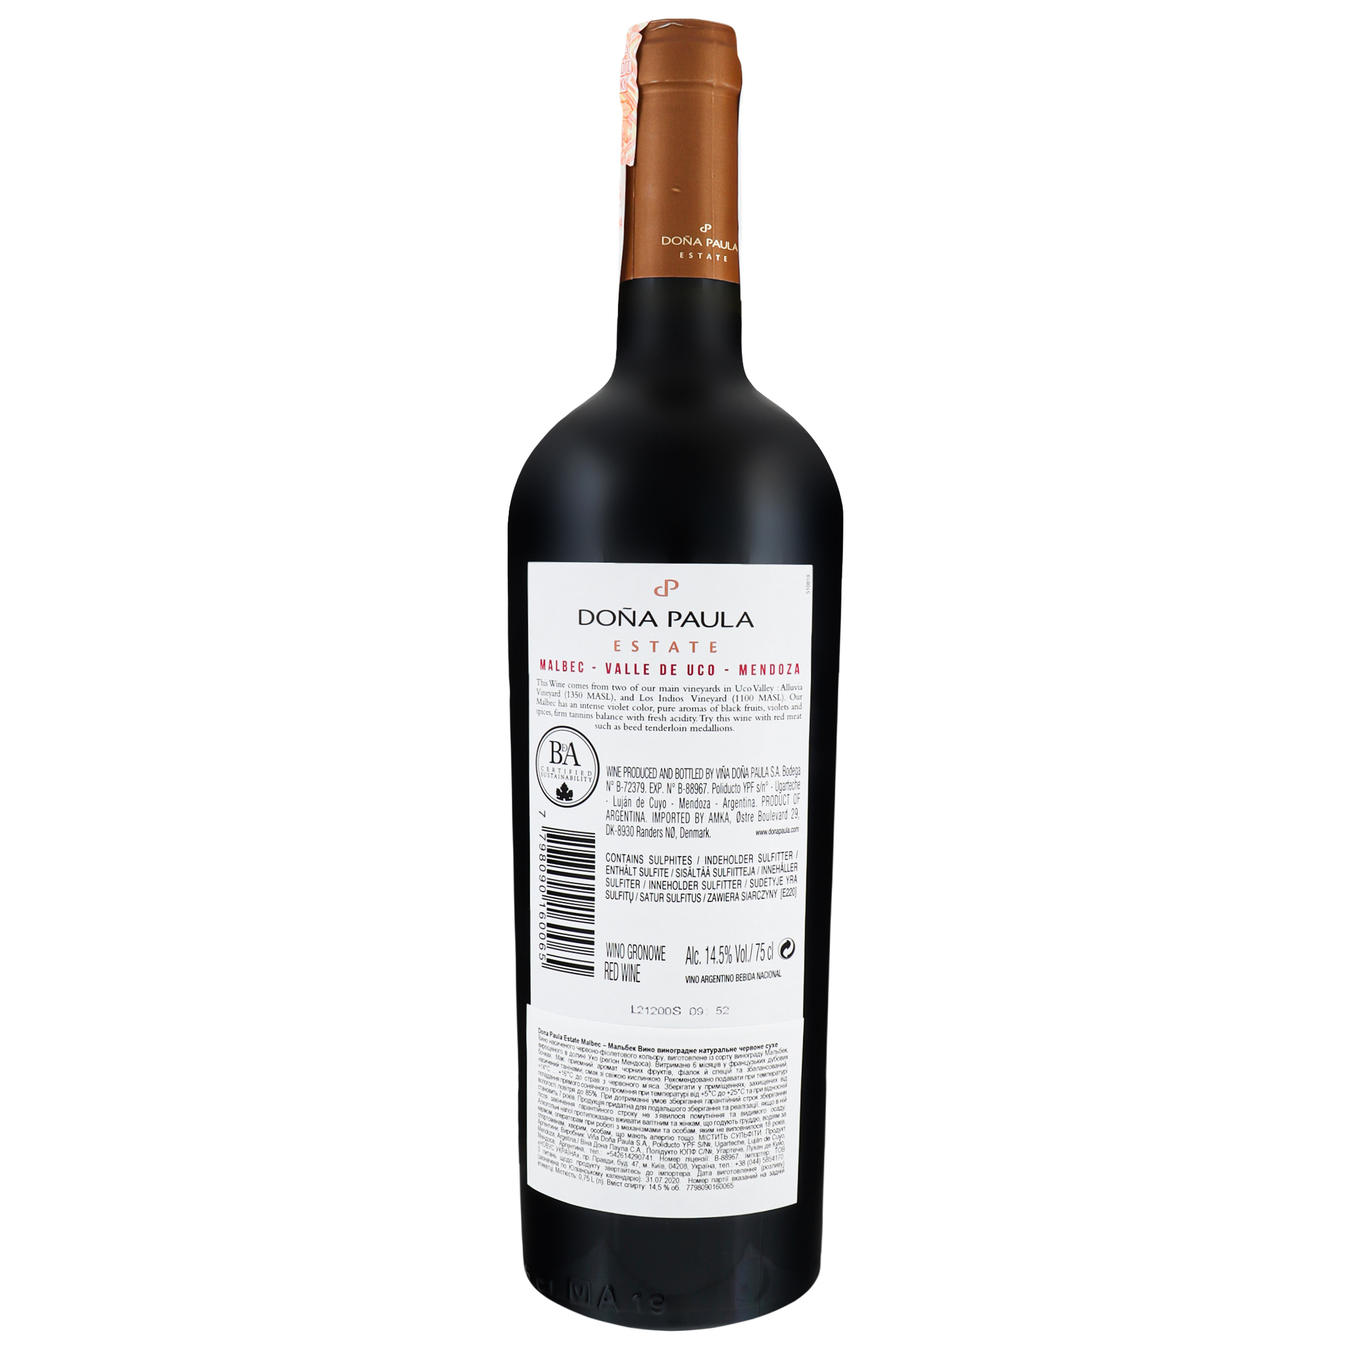 Вино Dona Paula Estate Malbec Valle de Uco-Mendoza красное сухое 13,5% 0,75л 2